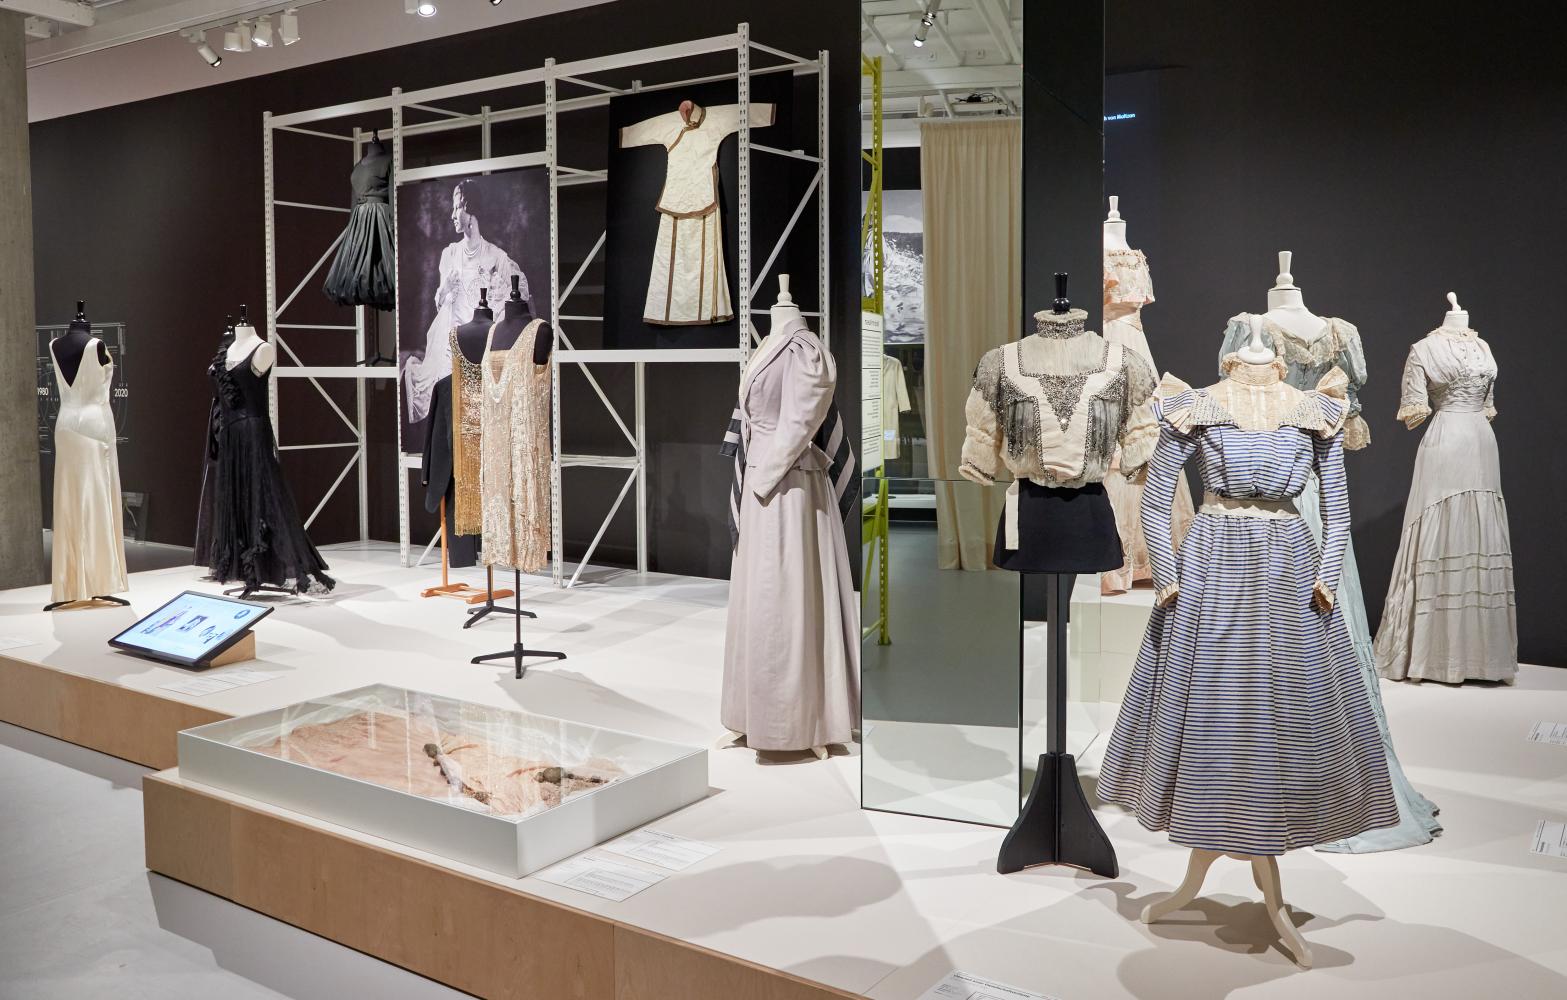 Ausstellung "Dressed. 7 Frauen - 200 Jahre Mode" im Museum für Kunst und Gewerbe Hamburg